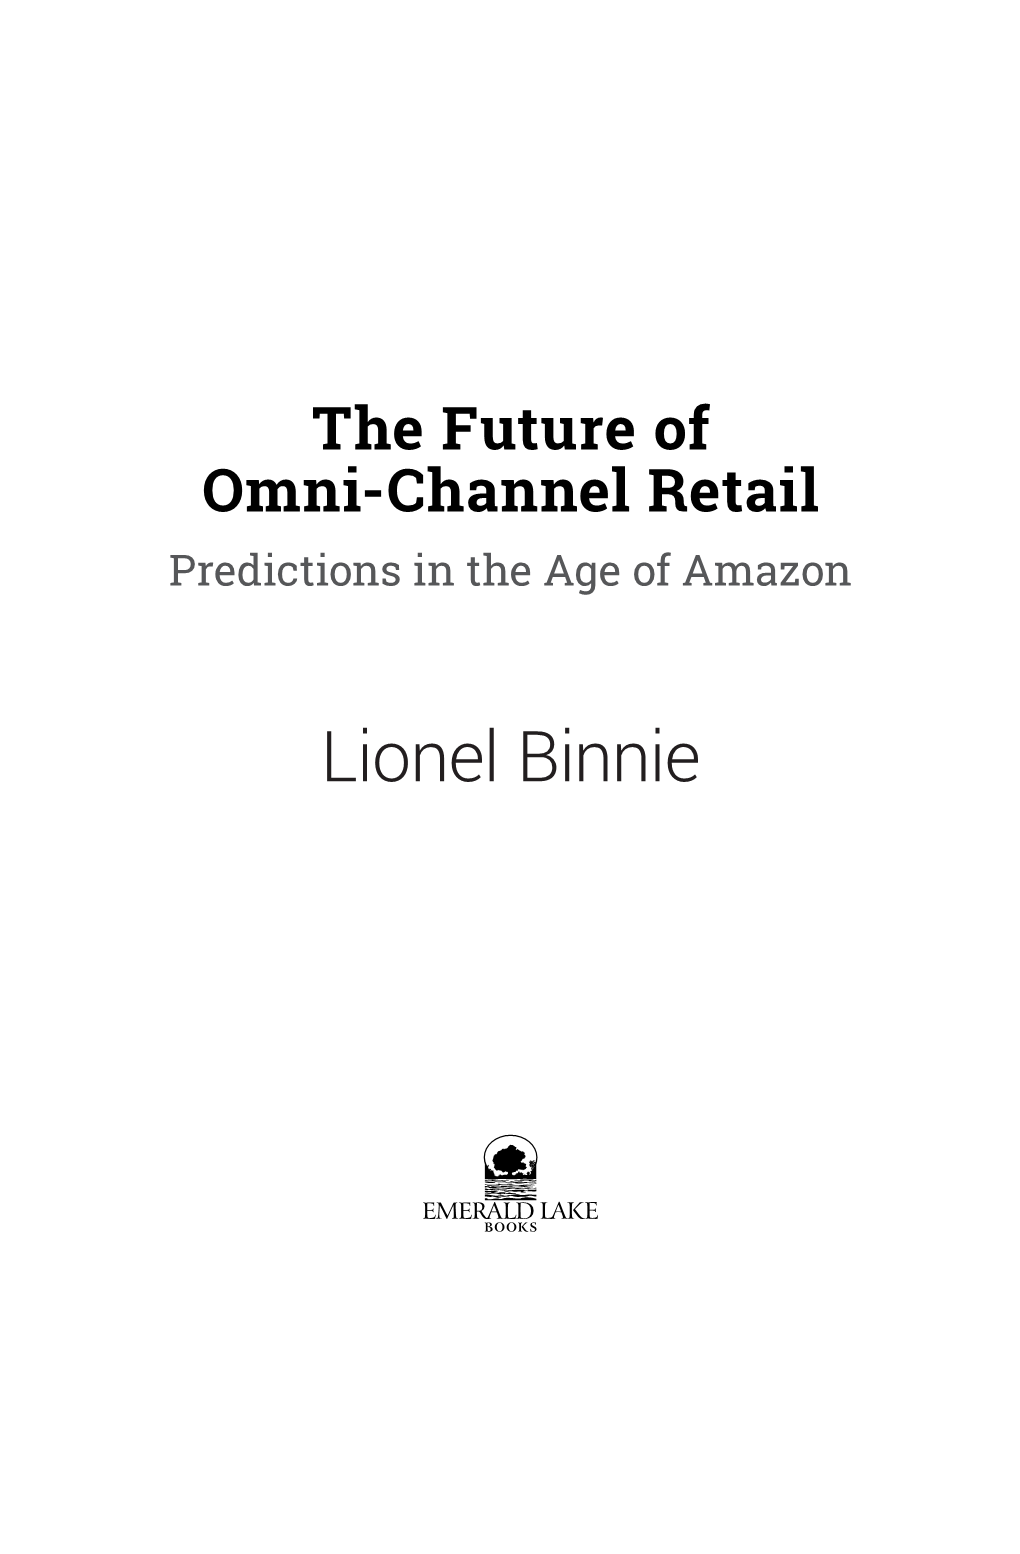 Lionel Binnie the Future of Omni-Channel Retail: Predictions in the Age of Amazon Copyright © 2018 Lionel Binnie